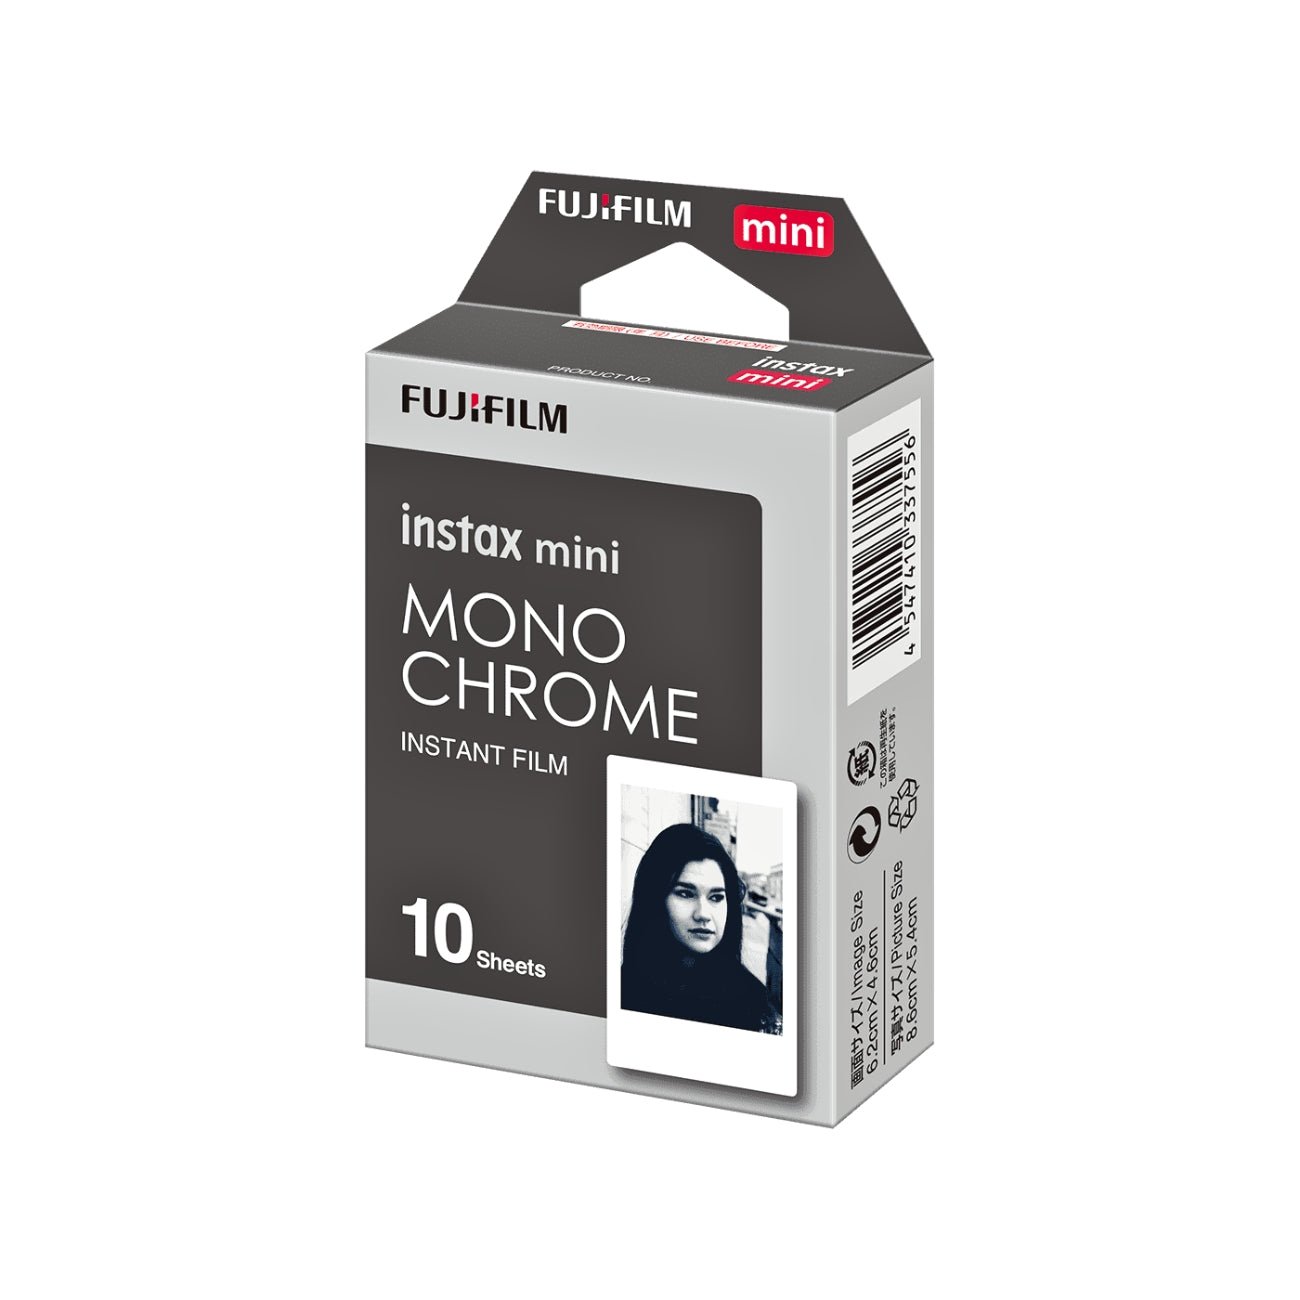 FUJIFILM INSTAX MINI Monochrome Instant Film (10 Exposures)